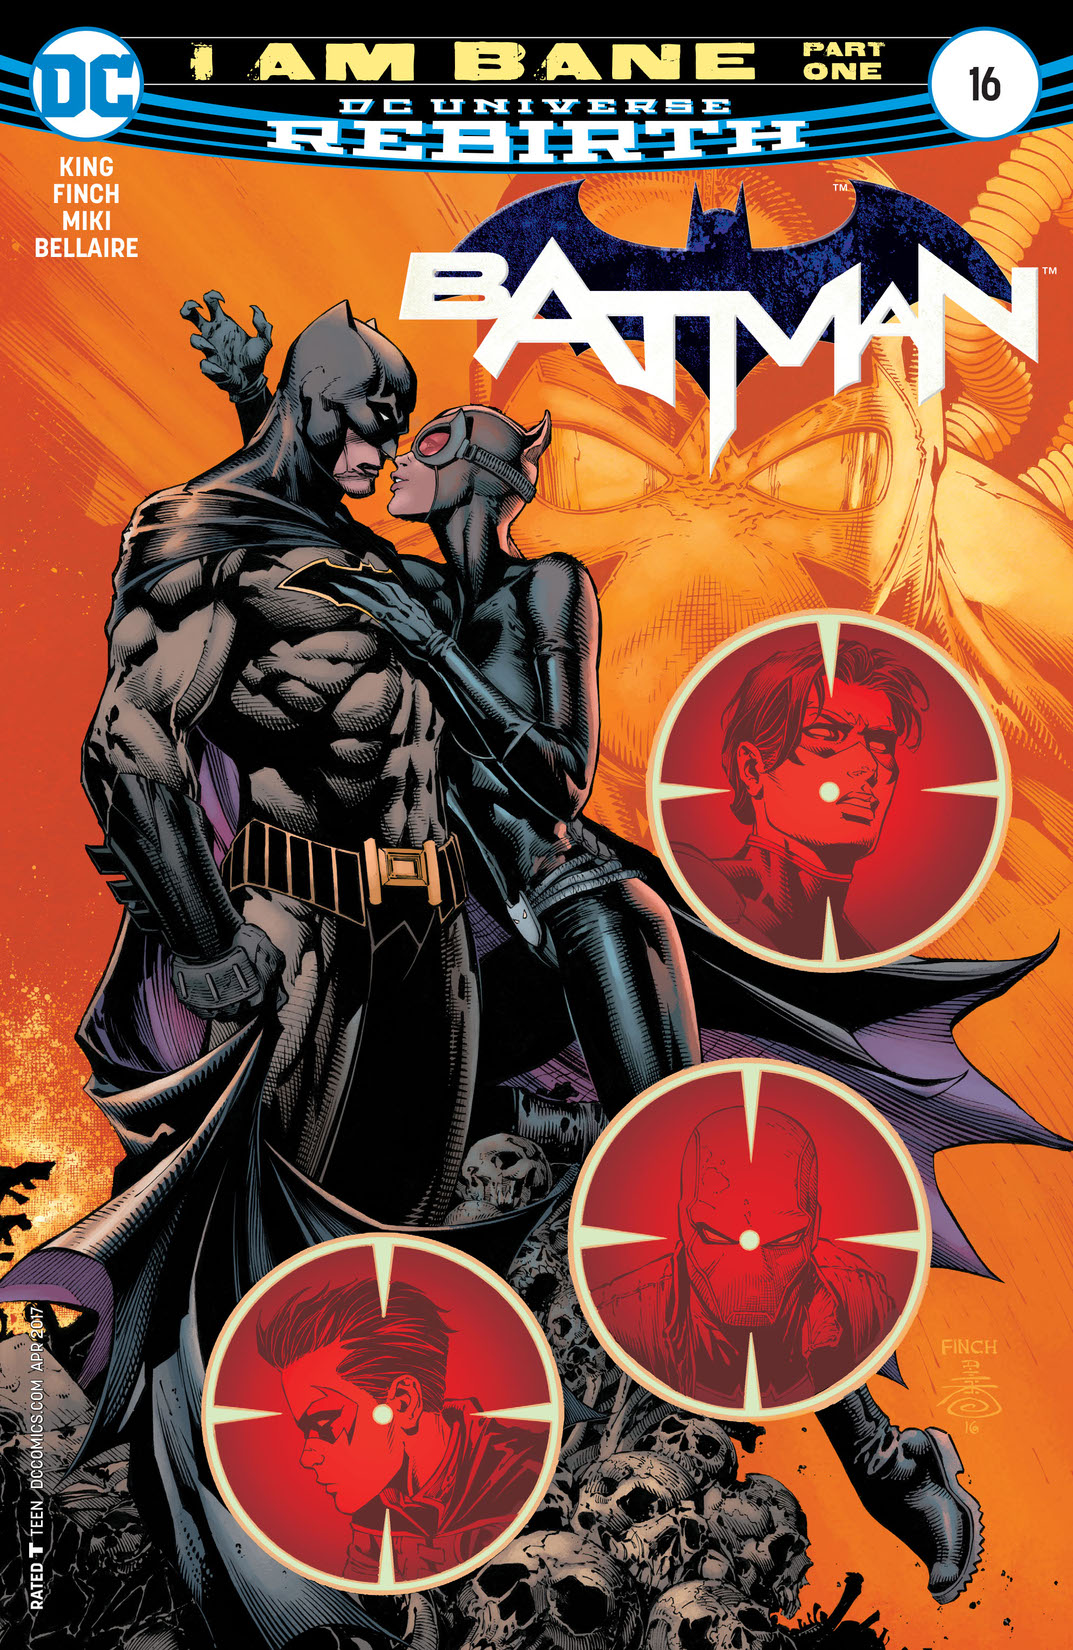 Batman (2016-) #16 preview images